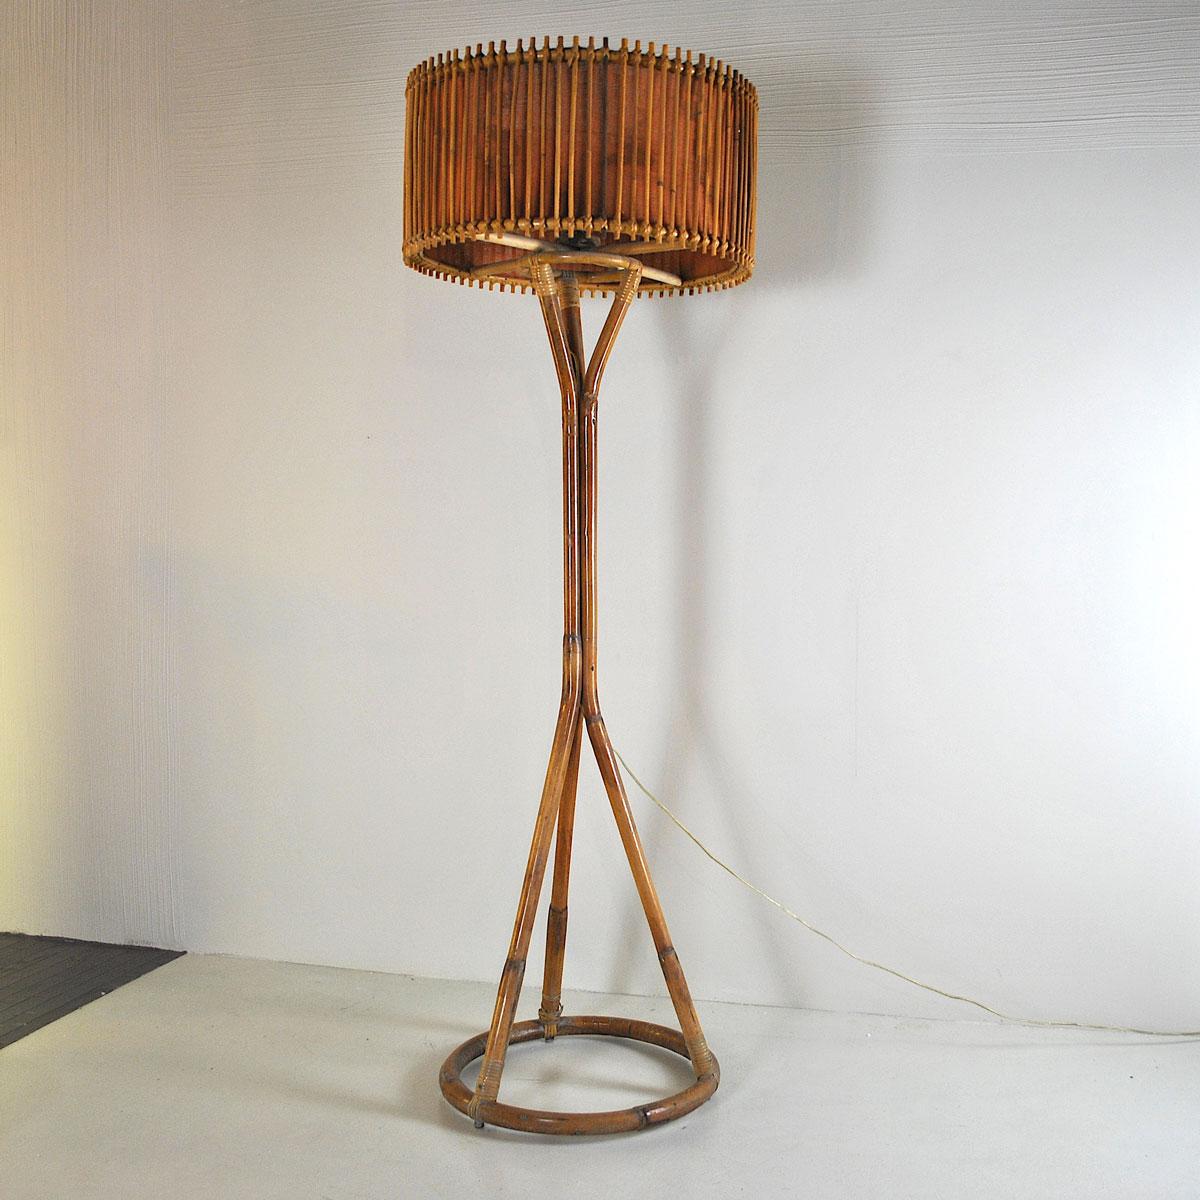 Mid-20th Century Italian Midcentury Floor Lamp in Bamboo